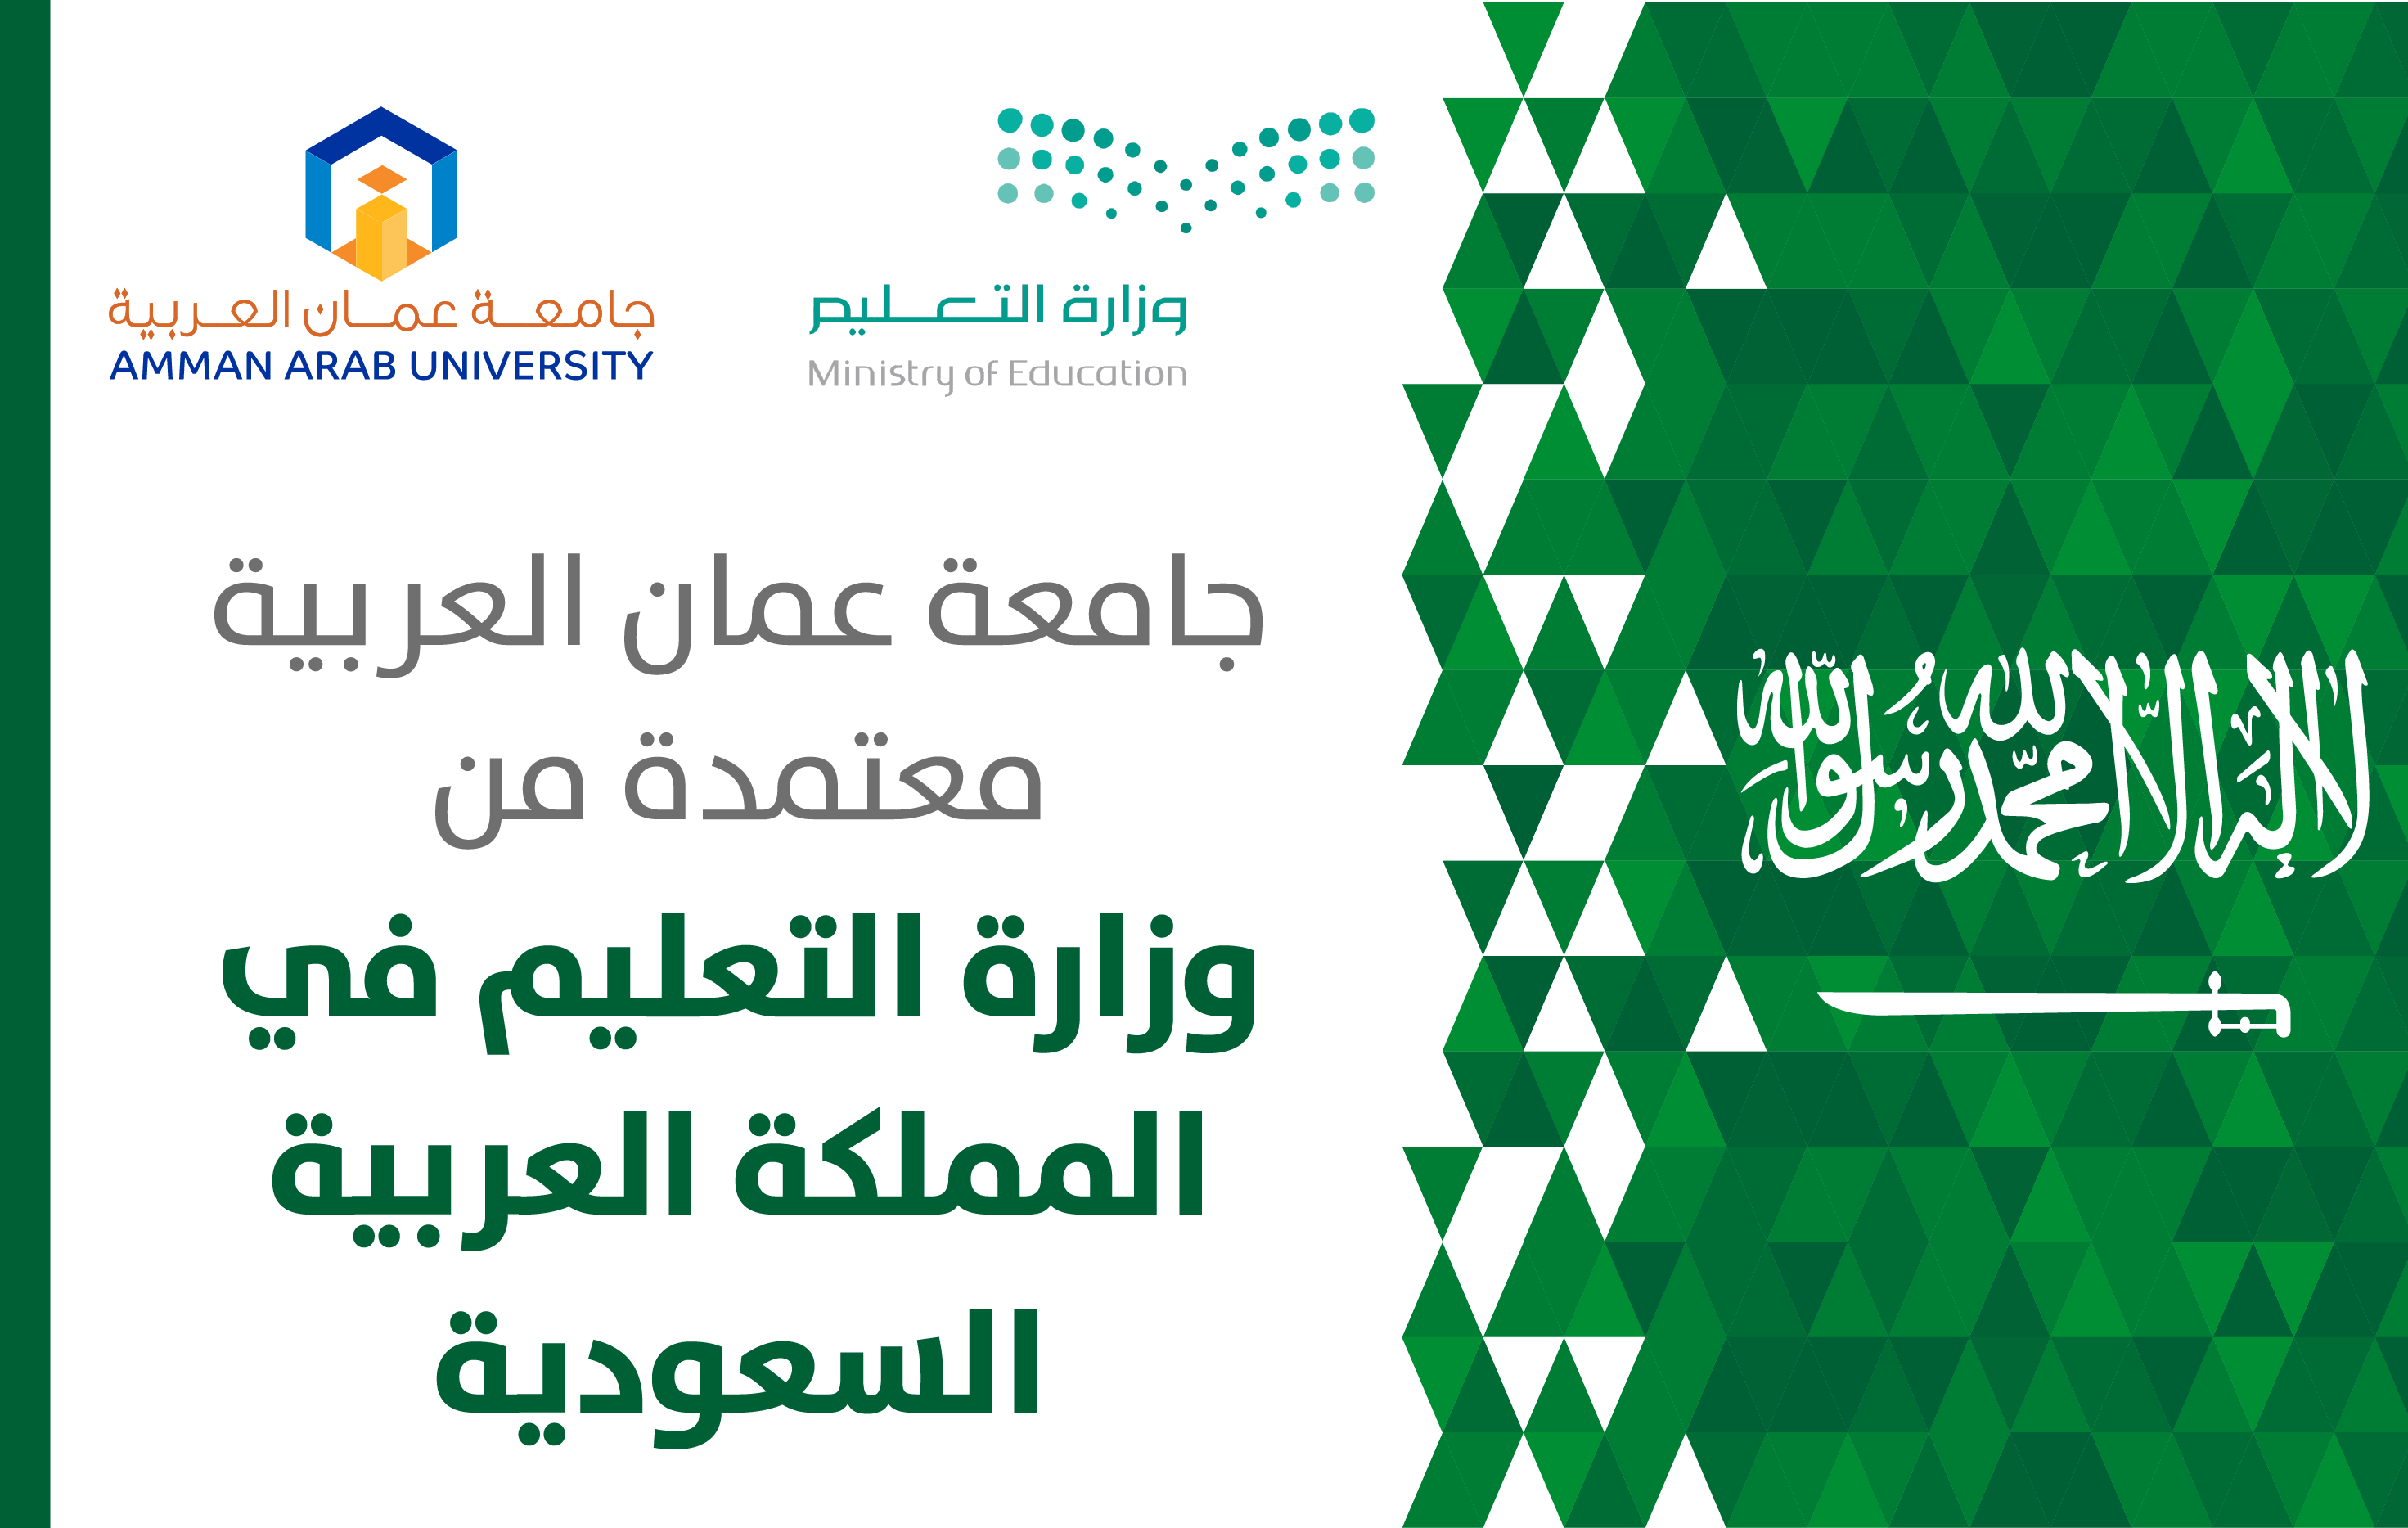 برامج "جامعة عمان العربية" معتمدة لدى وزارة التعليم العالي السعودية